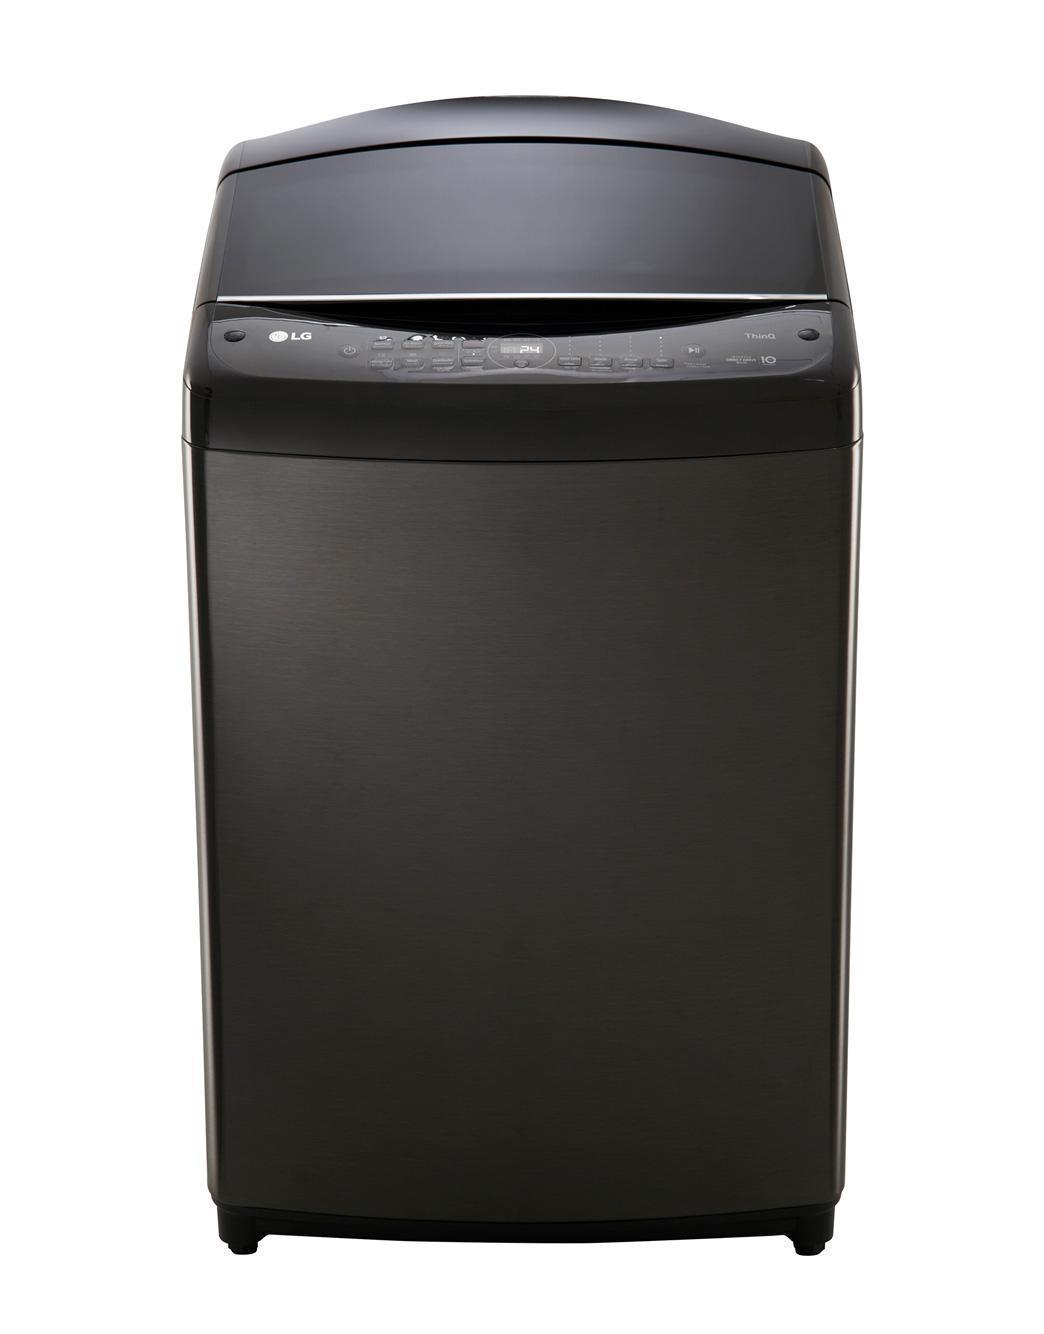 Ra mắt máy giặt lồng đứng LG AI DD - giặt sạch, nhanh, giảm nhăn - EX2KN3DuHVBQ26pMHX8QVzXzlCilFE 8myzbrDGfYopu8Wk6 e0G q19zkxwFsx5RTiqdKpVzwmnYl Dh